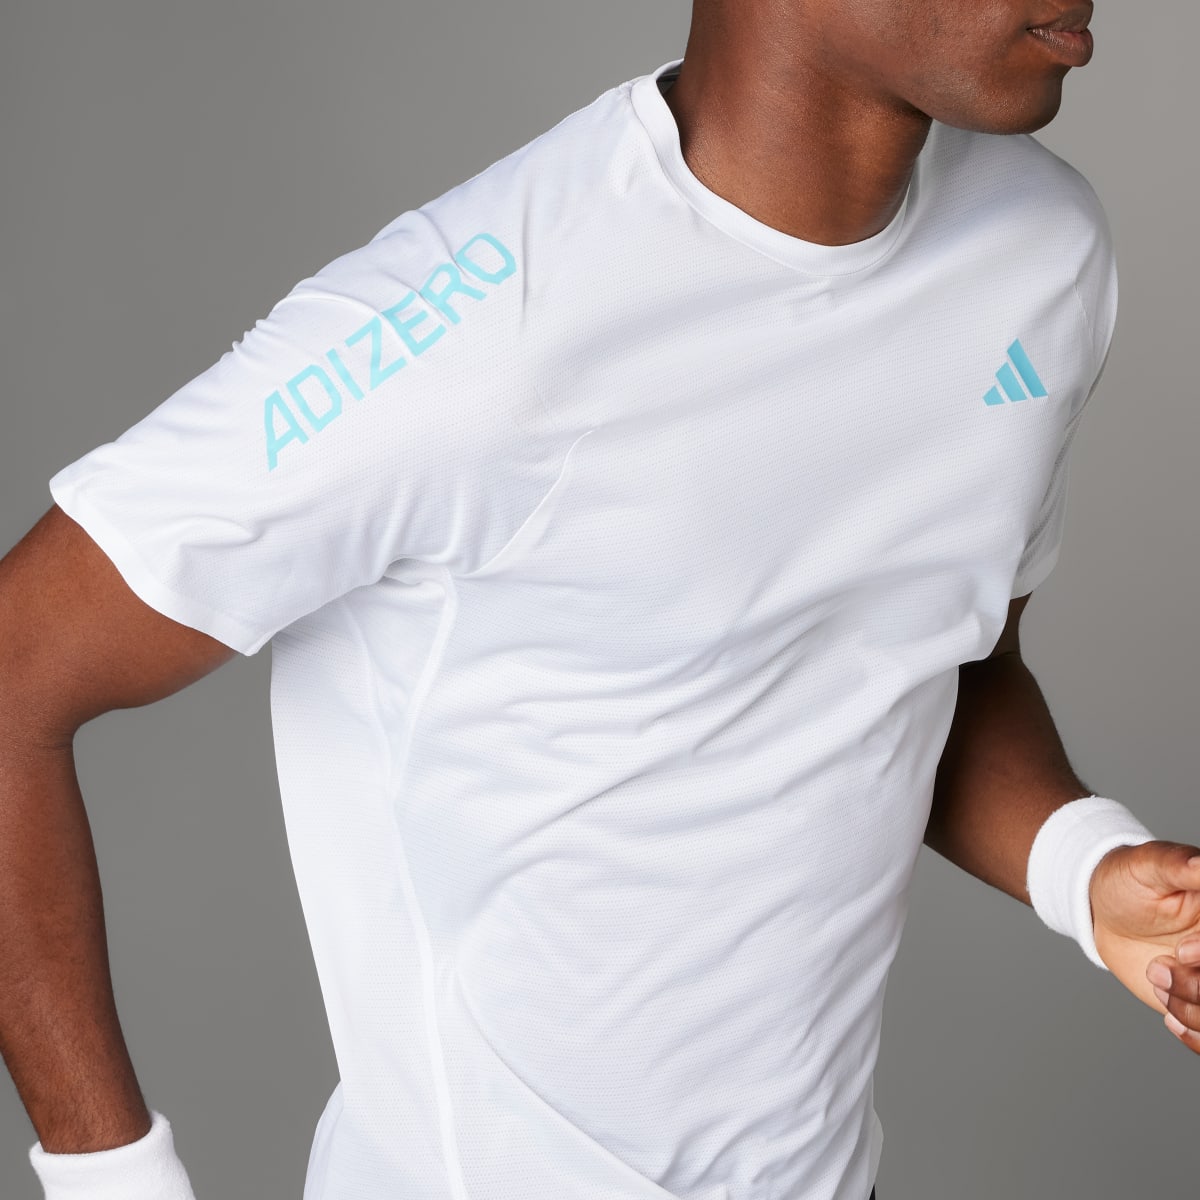 Adidas Adizero Running T-Shirt. 4